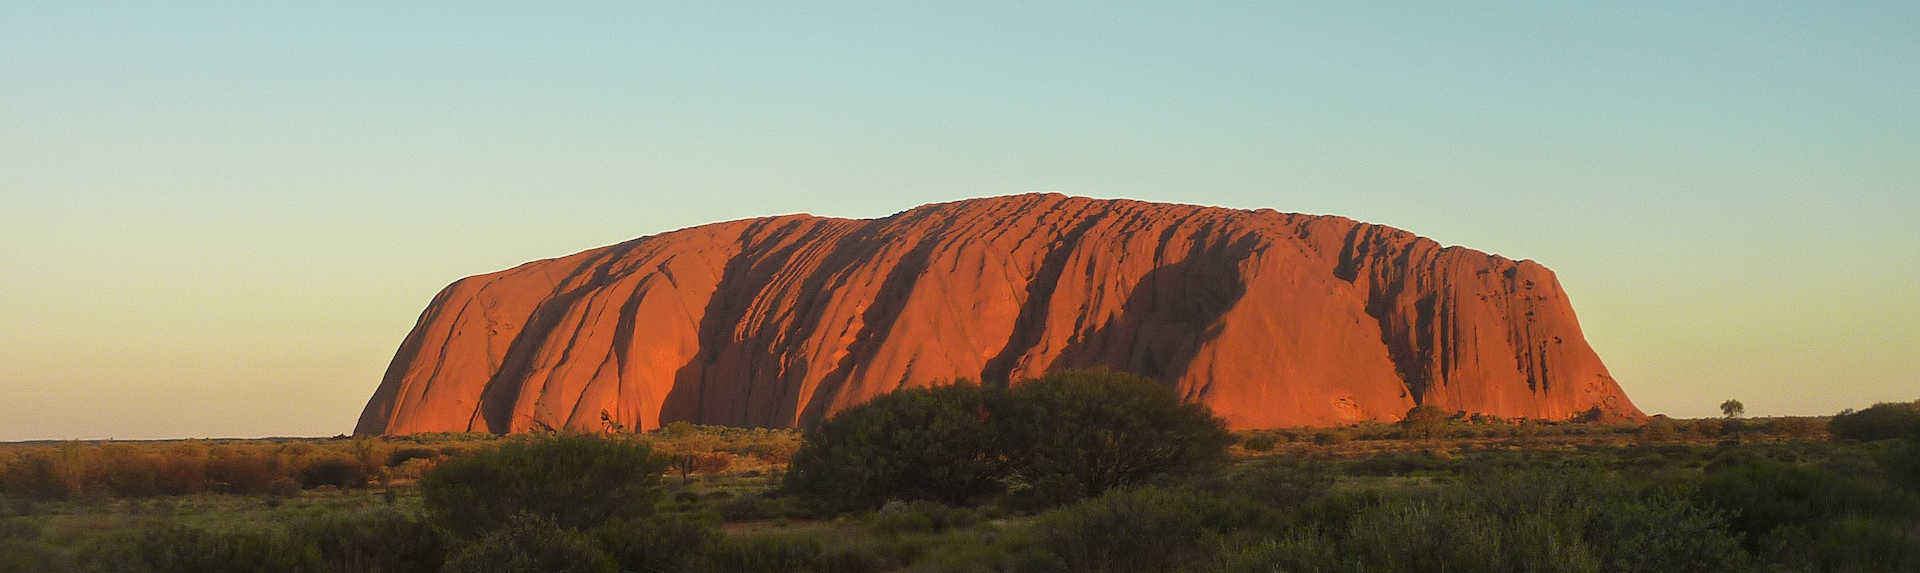 Uluru Travel Guide